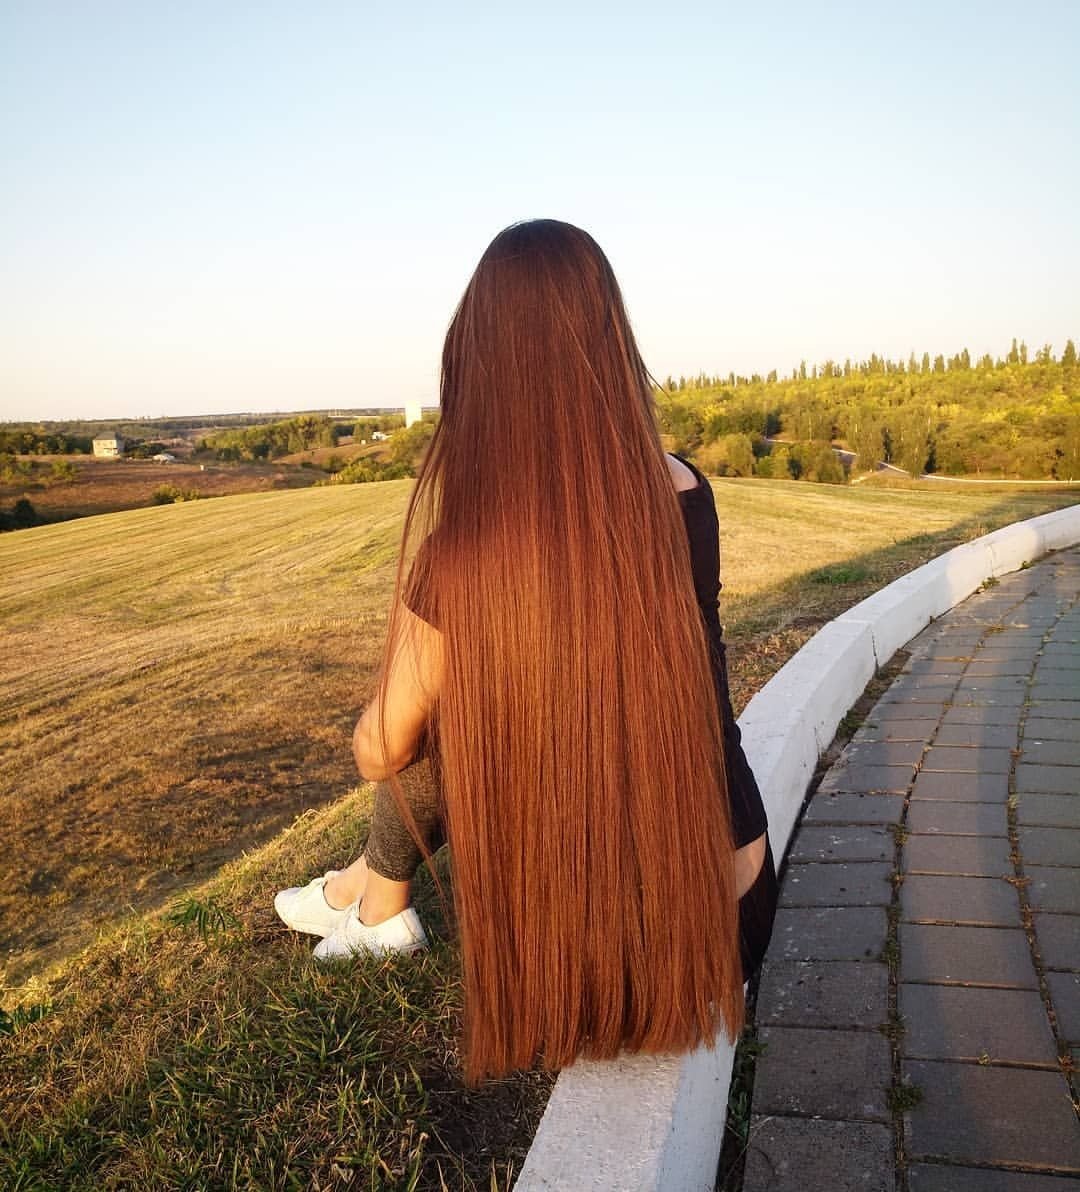 Девушка спиной с длинными волосами на фоне солнца — Картинки и �авы